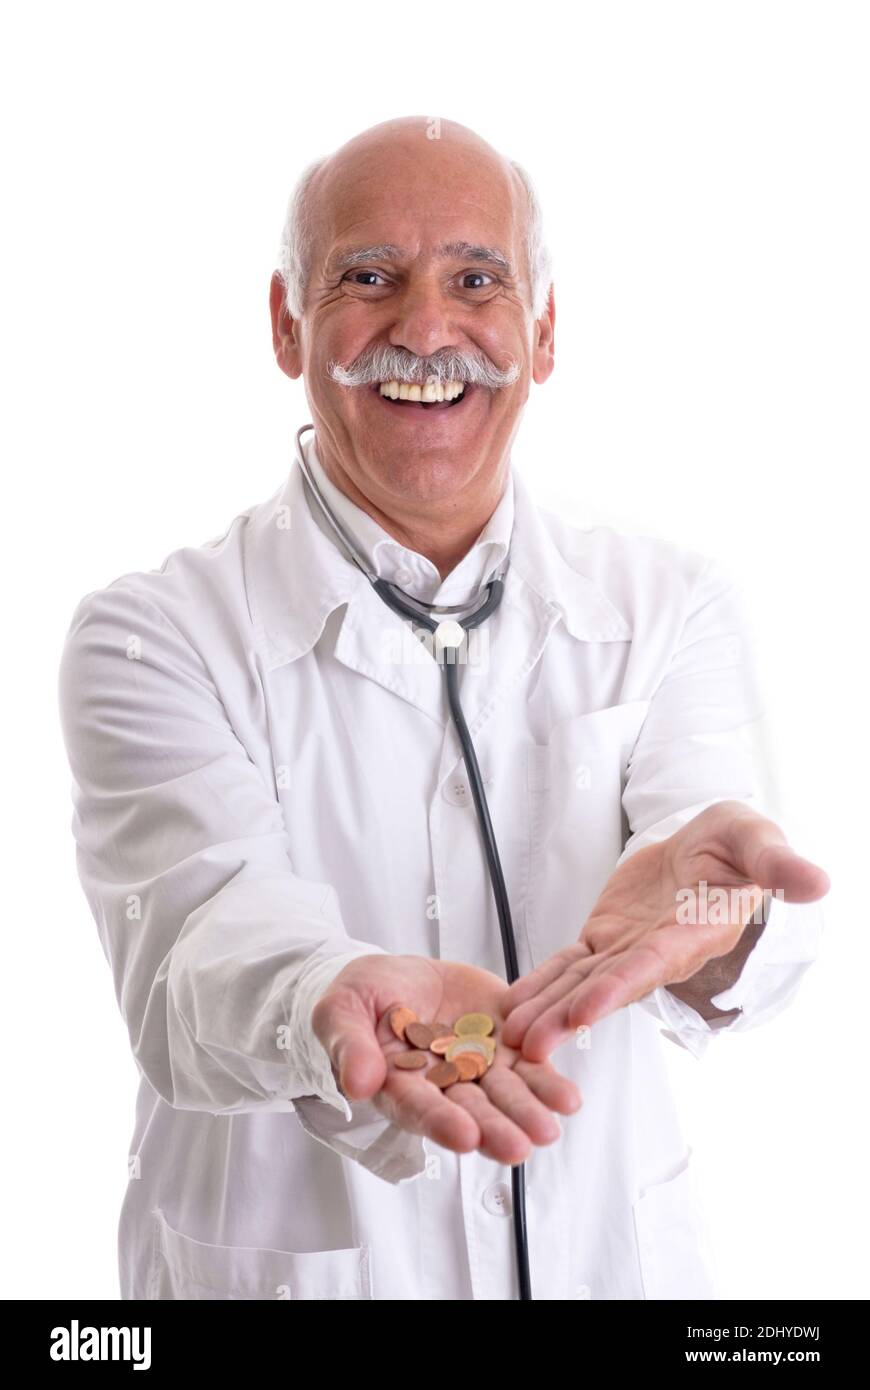 Gesundheitsreform, Arzt, Mann zeigt einige Euromünzen Stock Photo